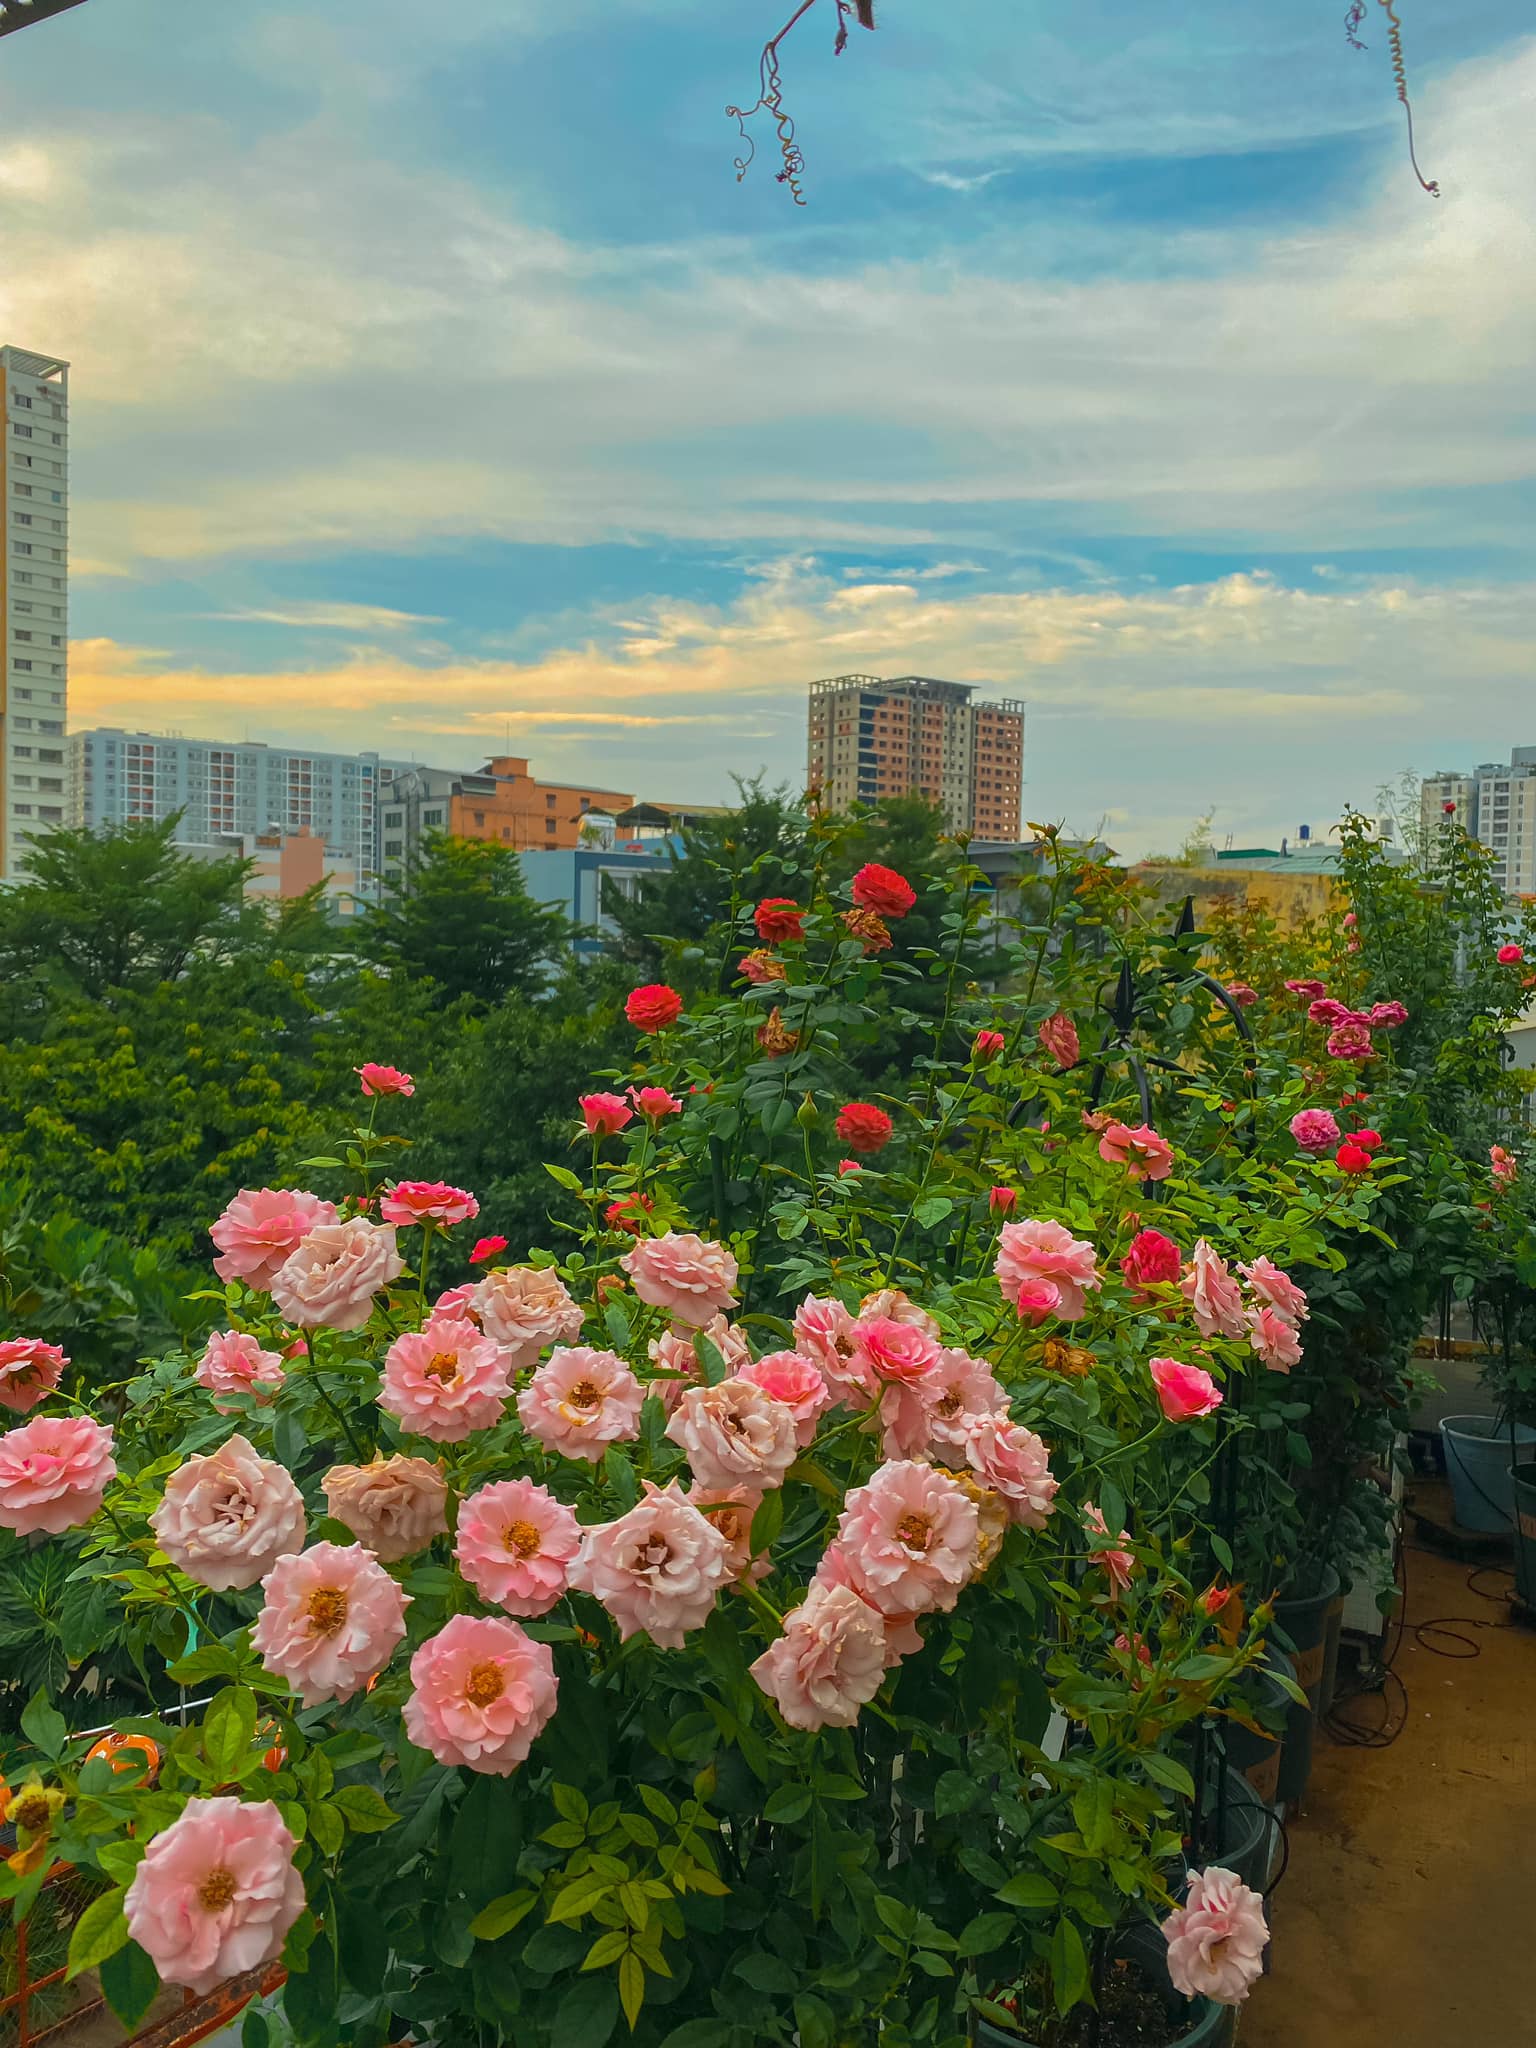 Bộ sưu tập 600 loại hoa hồng của nữ thạc sĩ ở Hà Nội